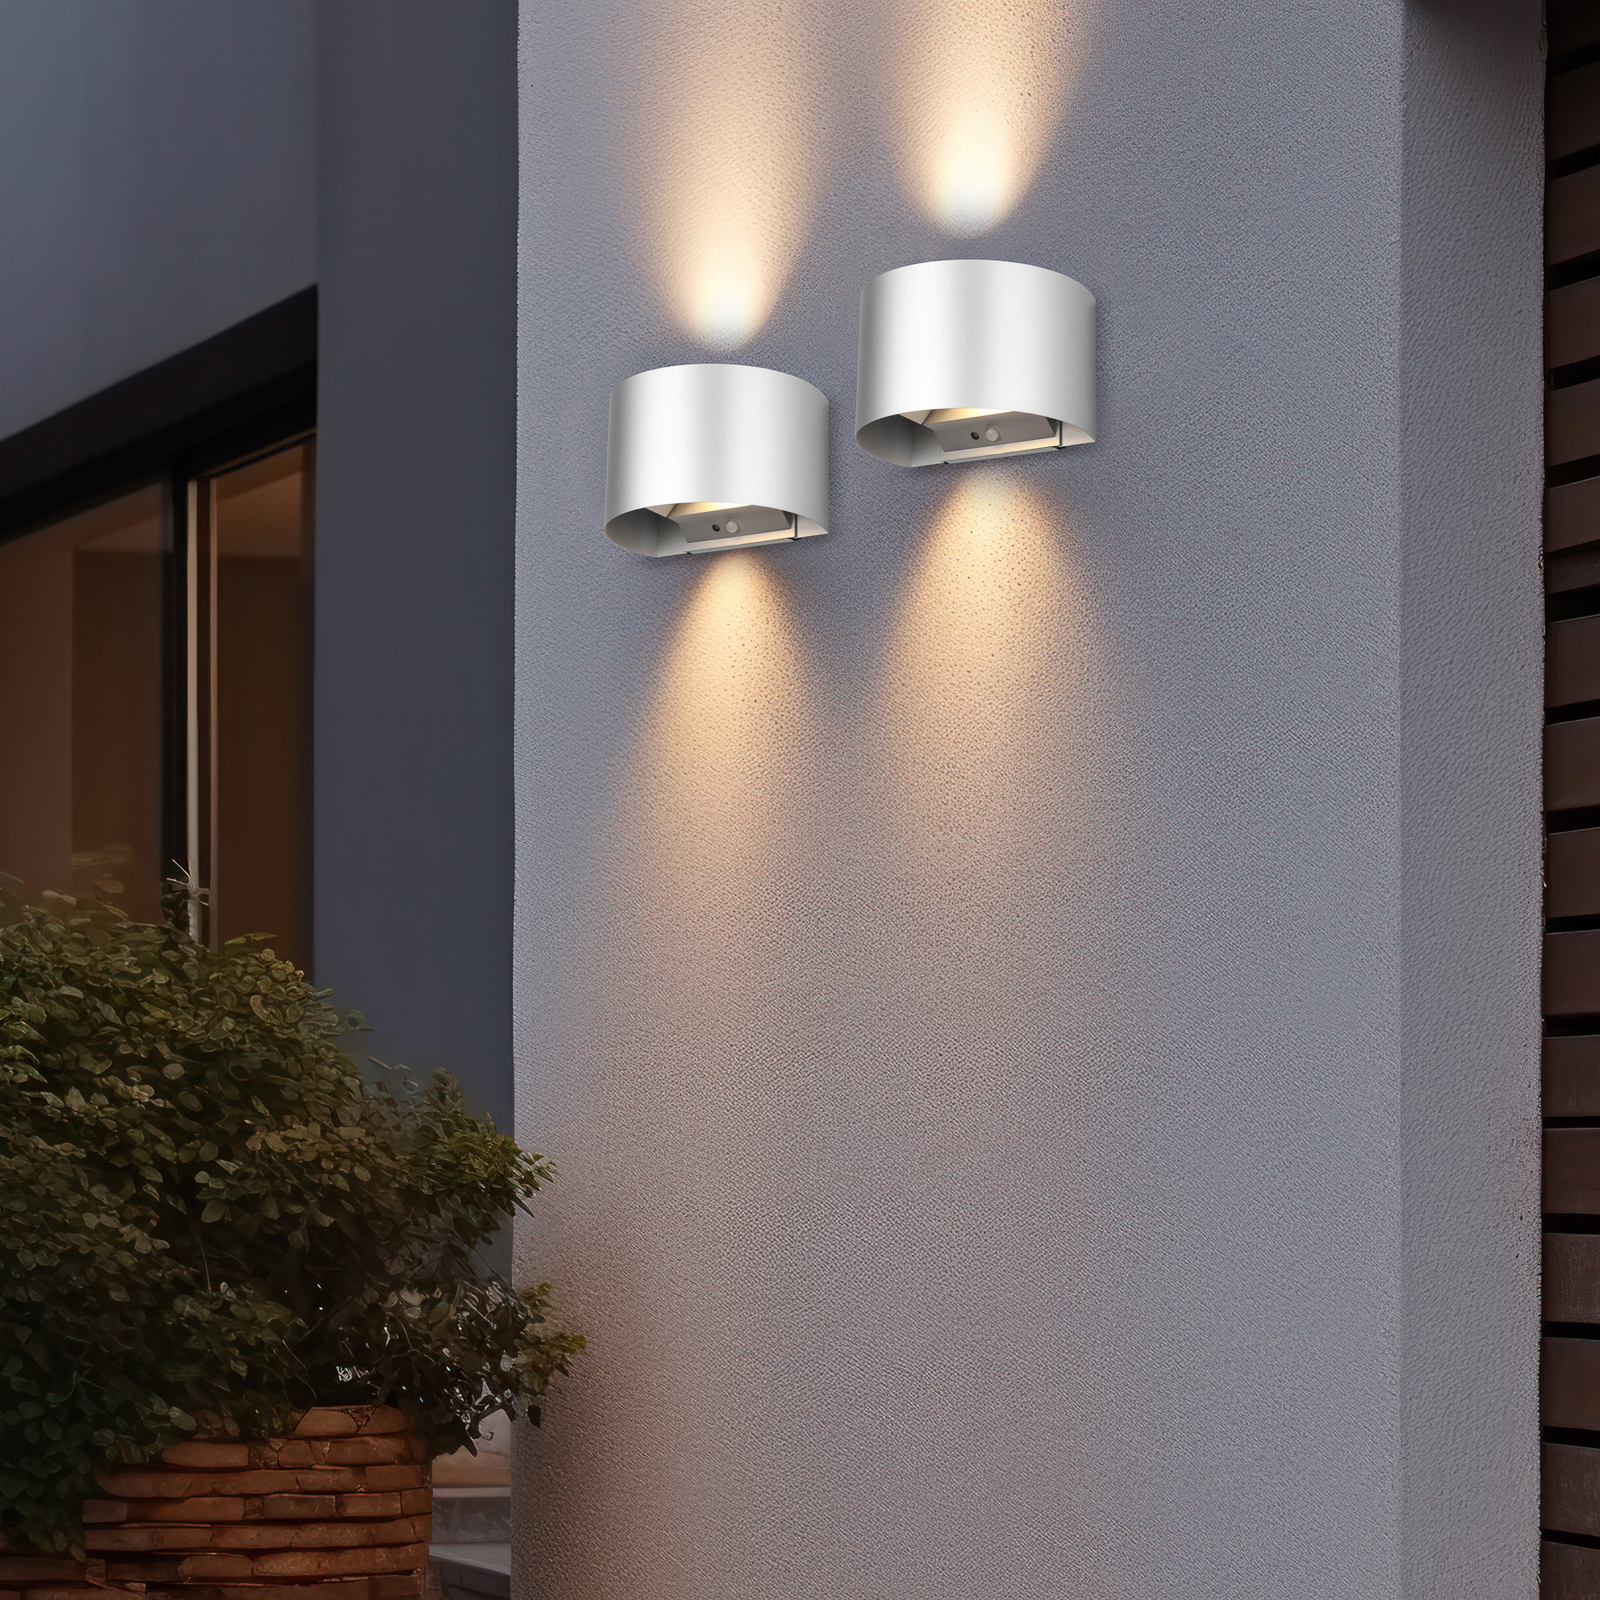 Talent LED vanjska zidna svjetiljka na baterije u boji titana širine 16 cm